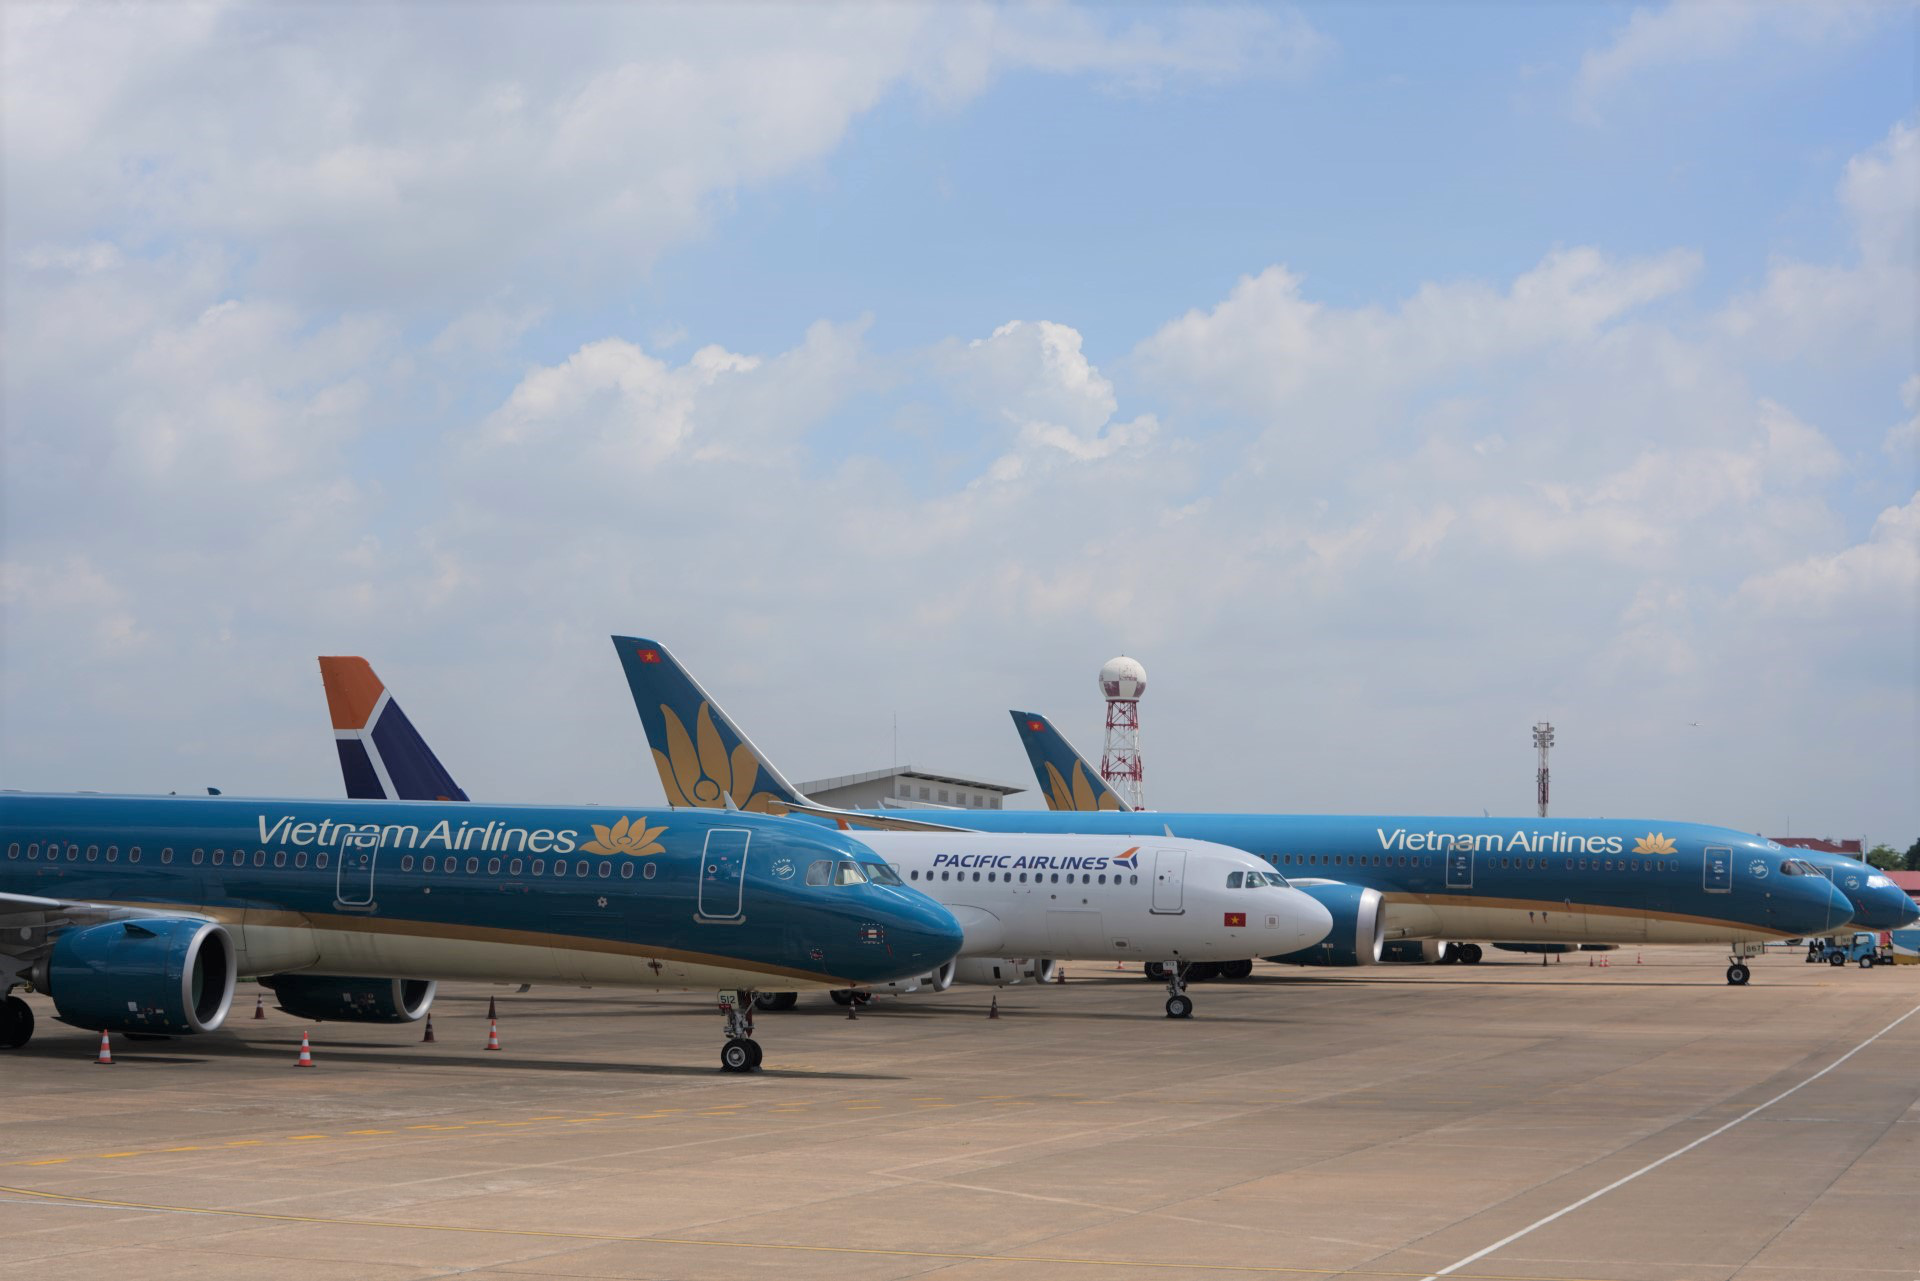 Vé máy bay giữa Hà Nội và Điện Biên rẻ bất ngờ chỉ từ 299.000 đồng/chiều - Ảnh 1.